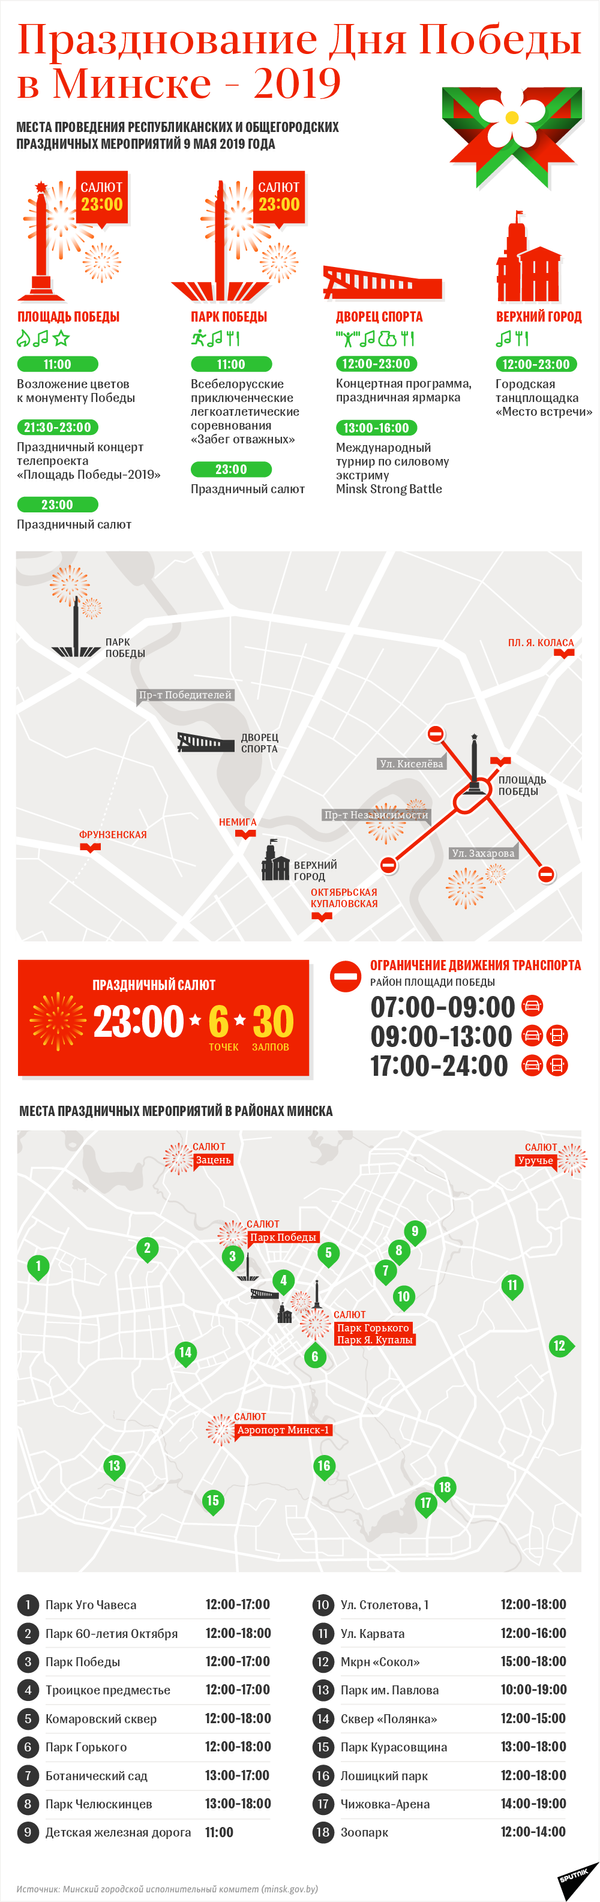 Празднование Дня Победы в Минске 2019 | Инфографика sputnik.by - Sputnik Беларусь